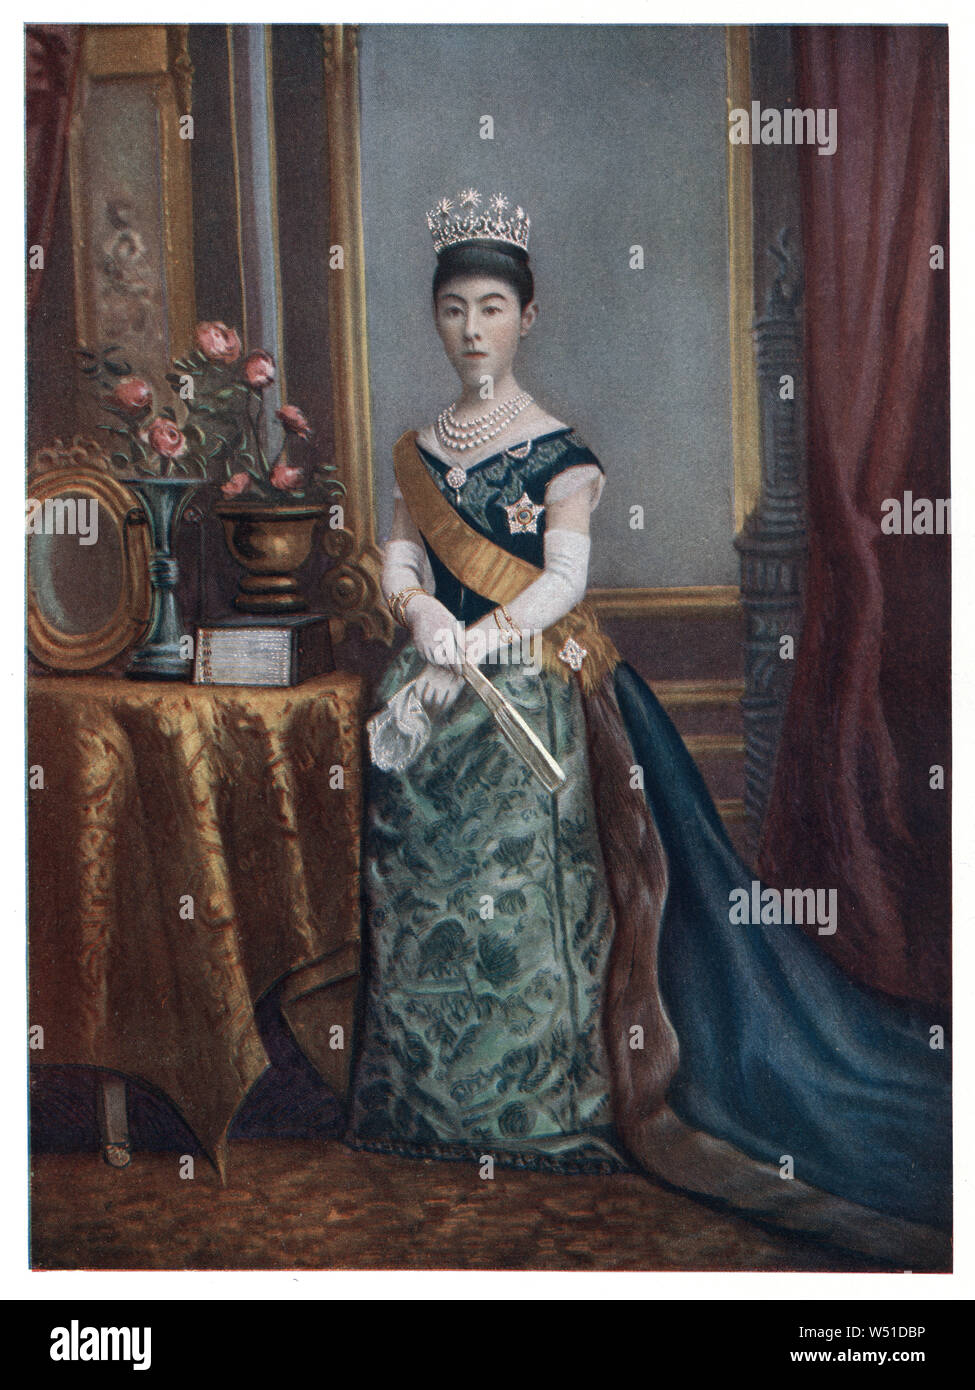 Imperatrice Shoken, noto anche come Empress Dowager Shoken, era la moglie dell'Imperatore Meiji del Giappone. Foto Stock